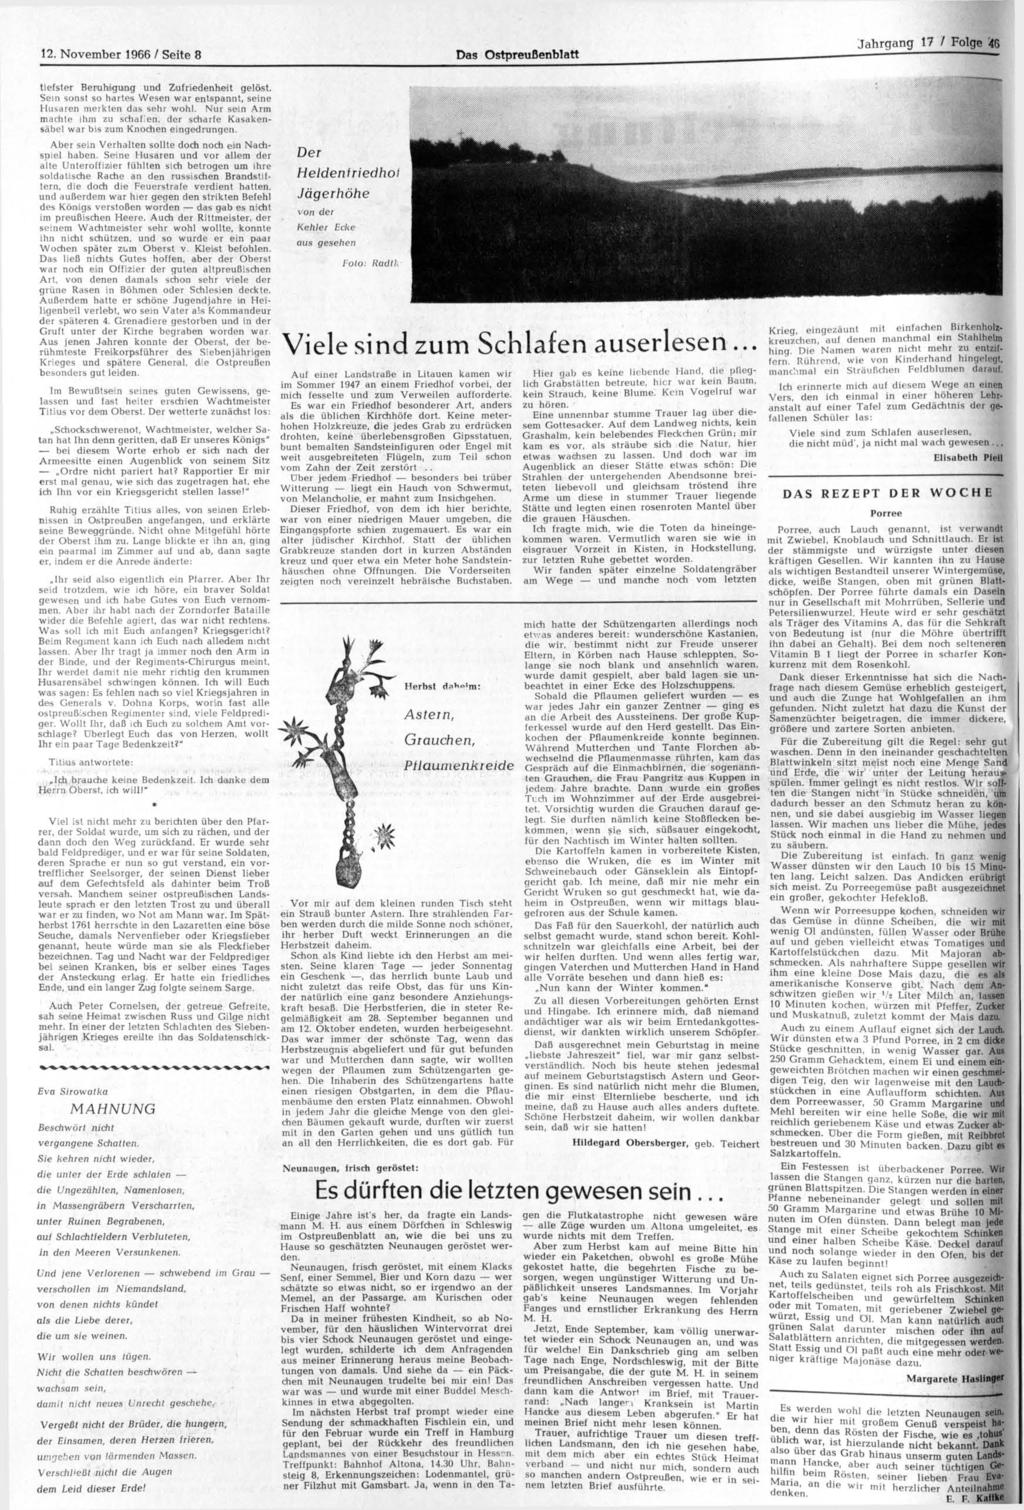 12. November 1966 / Seite 8 Das Ostpreußenblatt Jahrgang 17 / Folge 46 tiefster Beruhigung und Zufriedenheit geläst. Sein sonst so hartes Wesen war entspannt, seine Husaren merkten das sehr wohl.